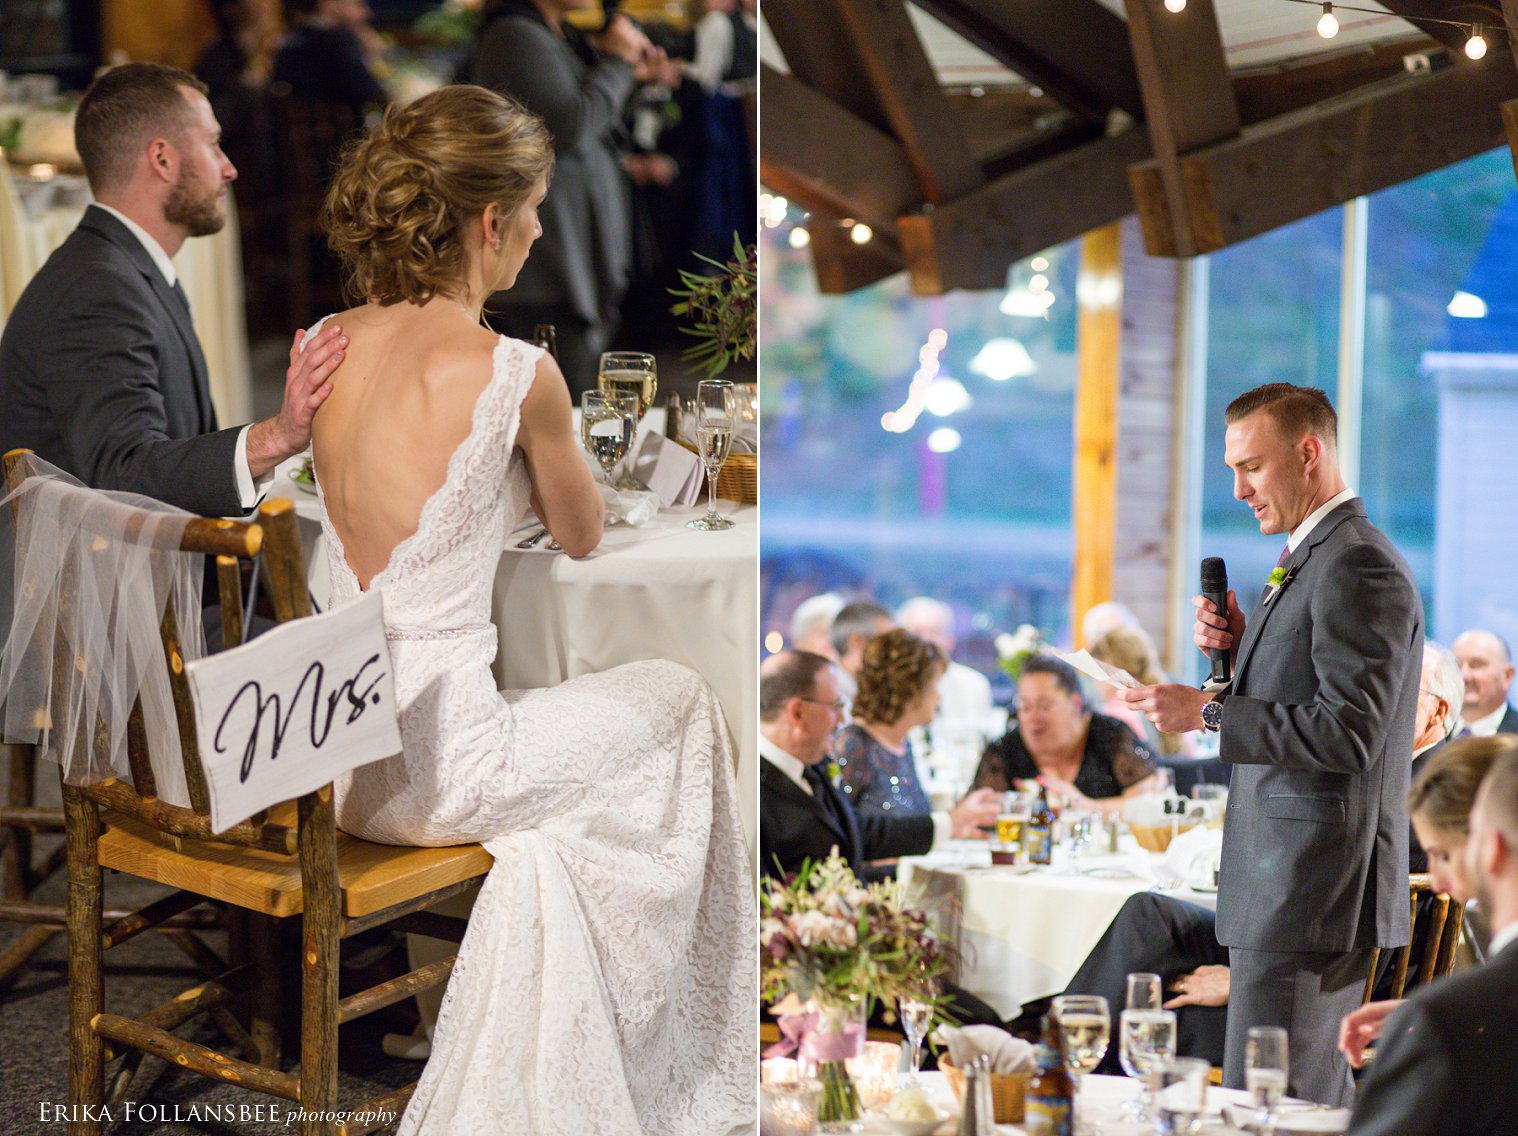 Toasts | Loon Mt. Wedding | Erika Follansbee Photography